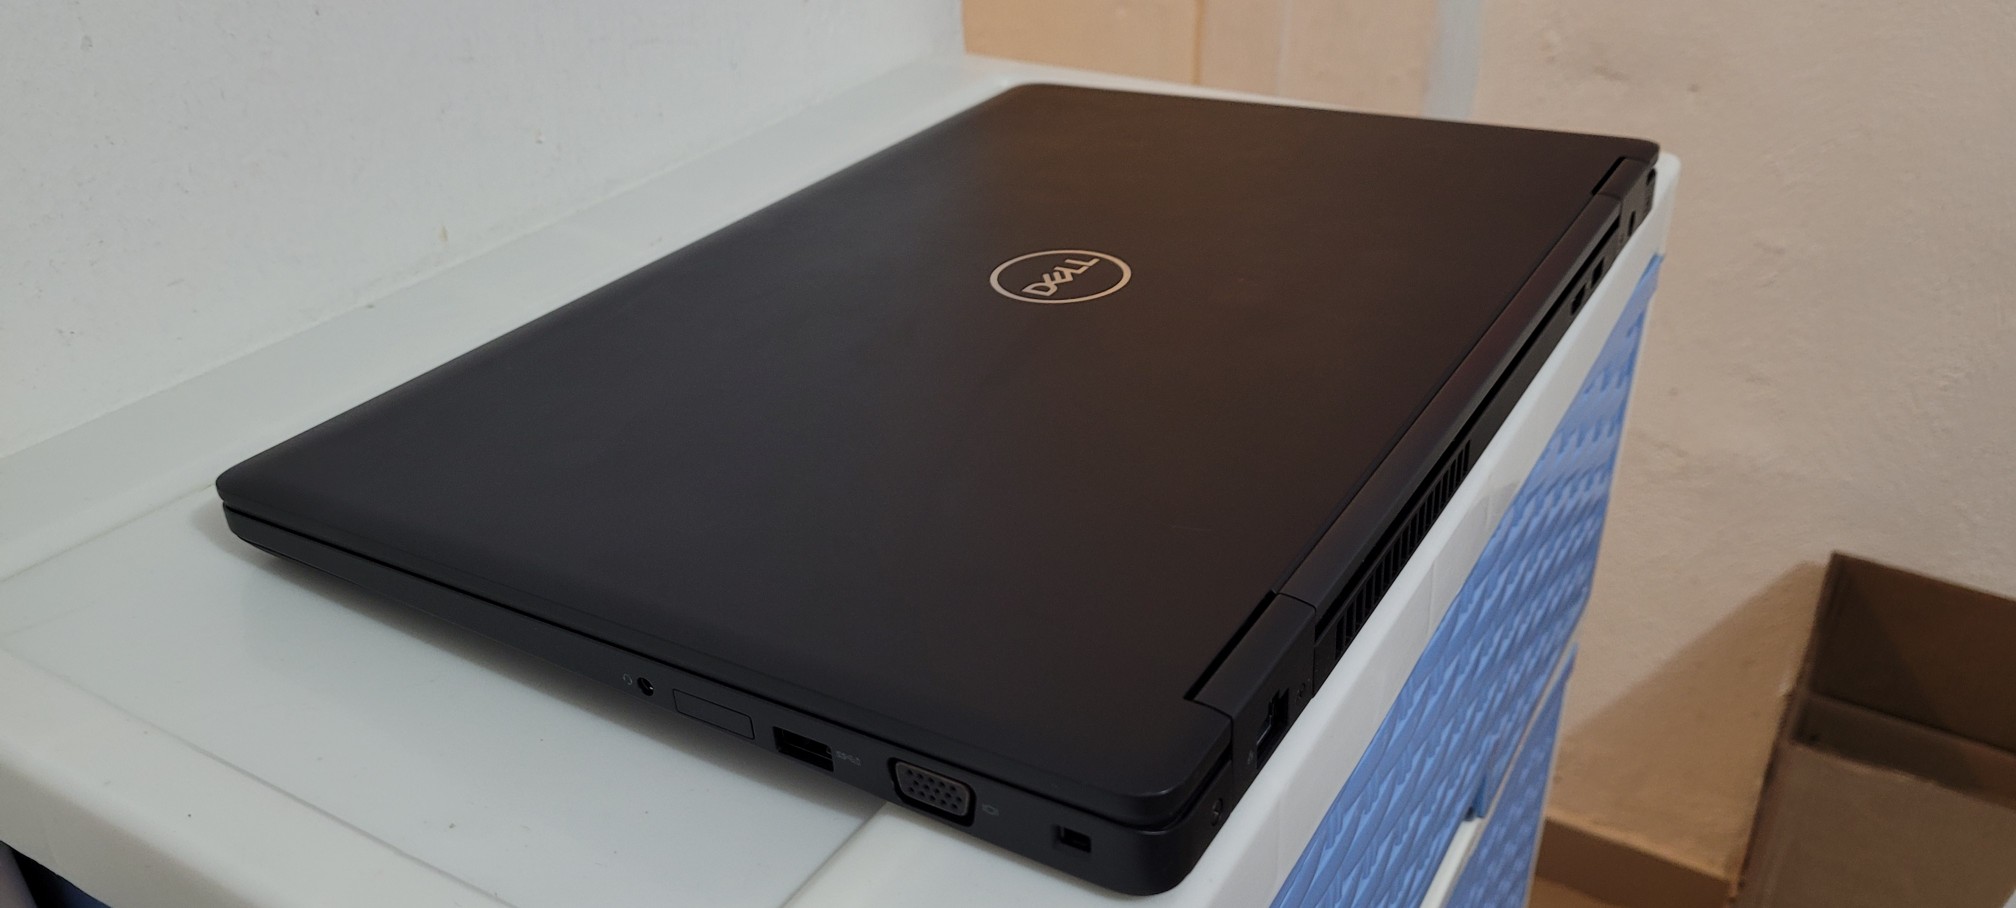 computadoras y laptops - Dell 5580 17 Pulg Core i5 7ma Gen Ram 16gb Disco 256gb SSD Video intel Y Nvidea 2